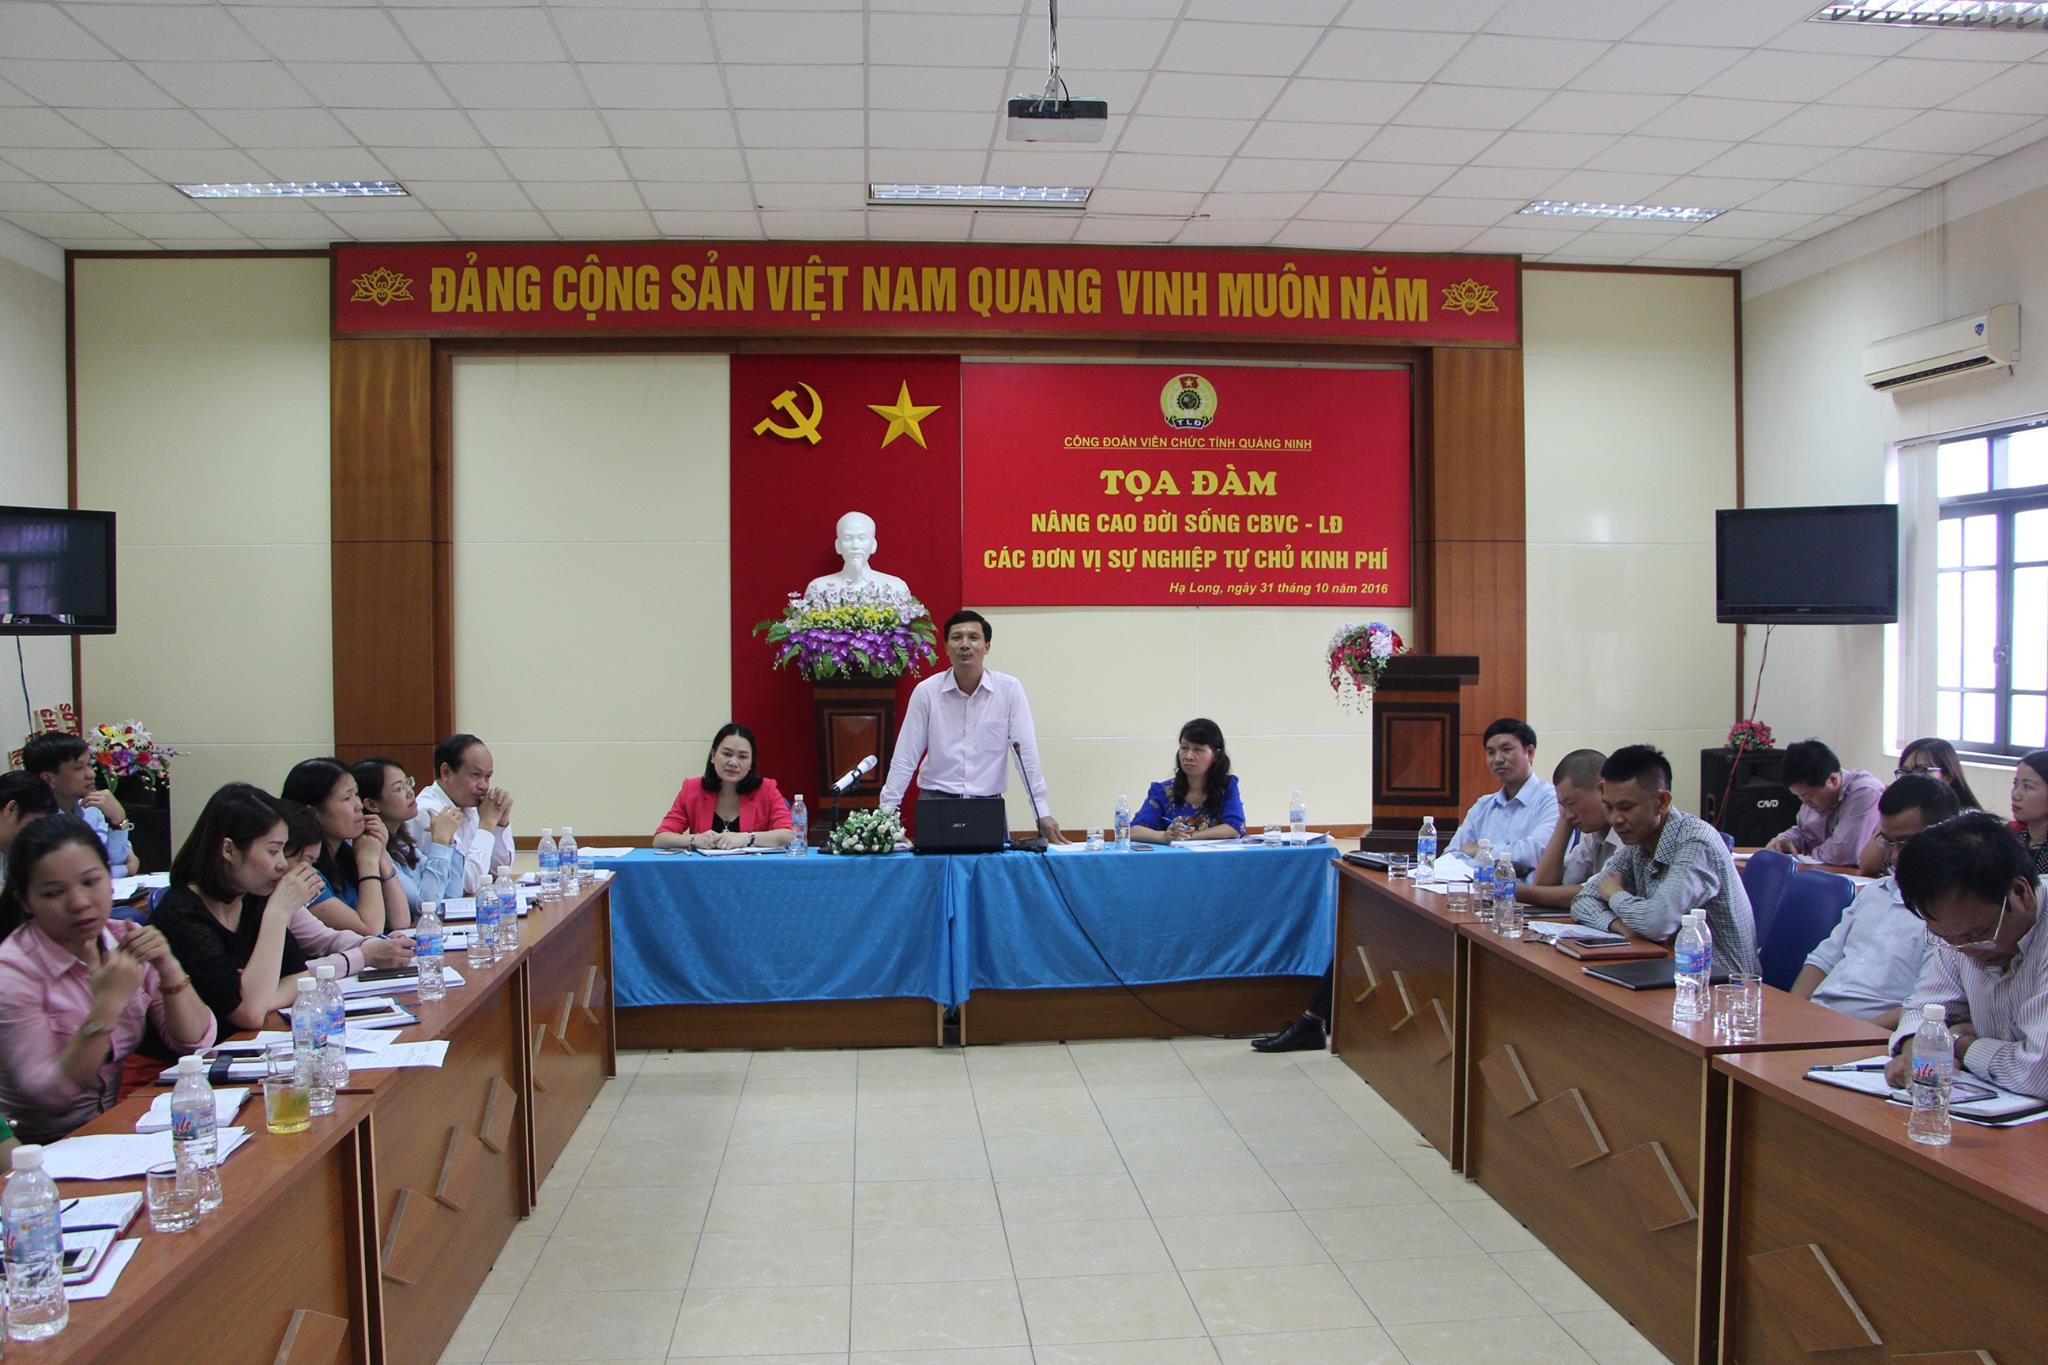 CĐVC tỉnh Quảng Ninh tổ chức tọa đàm nâng cao đời sống CBVCLĐ các đơn vị sự nghiệp tự chủ kinh phí